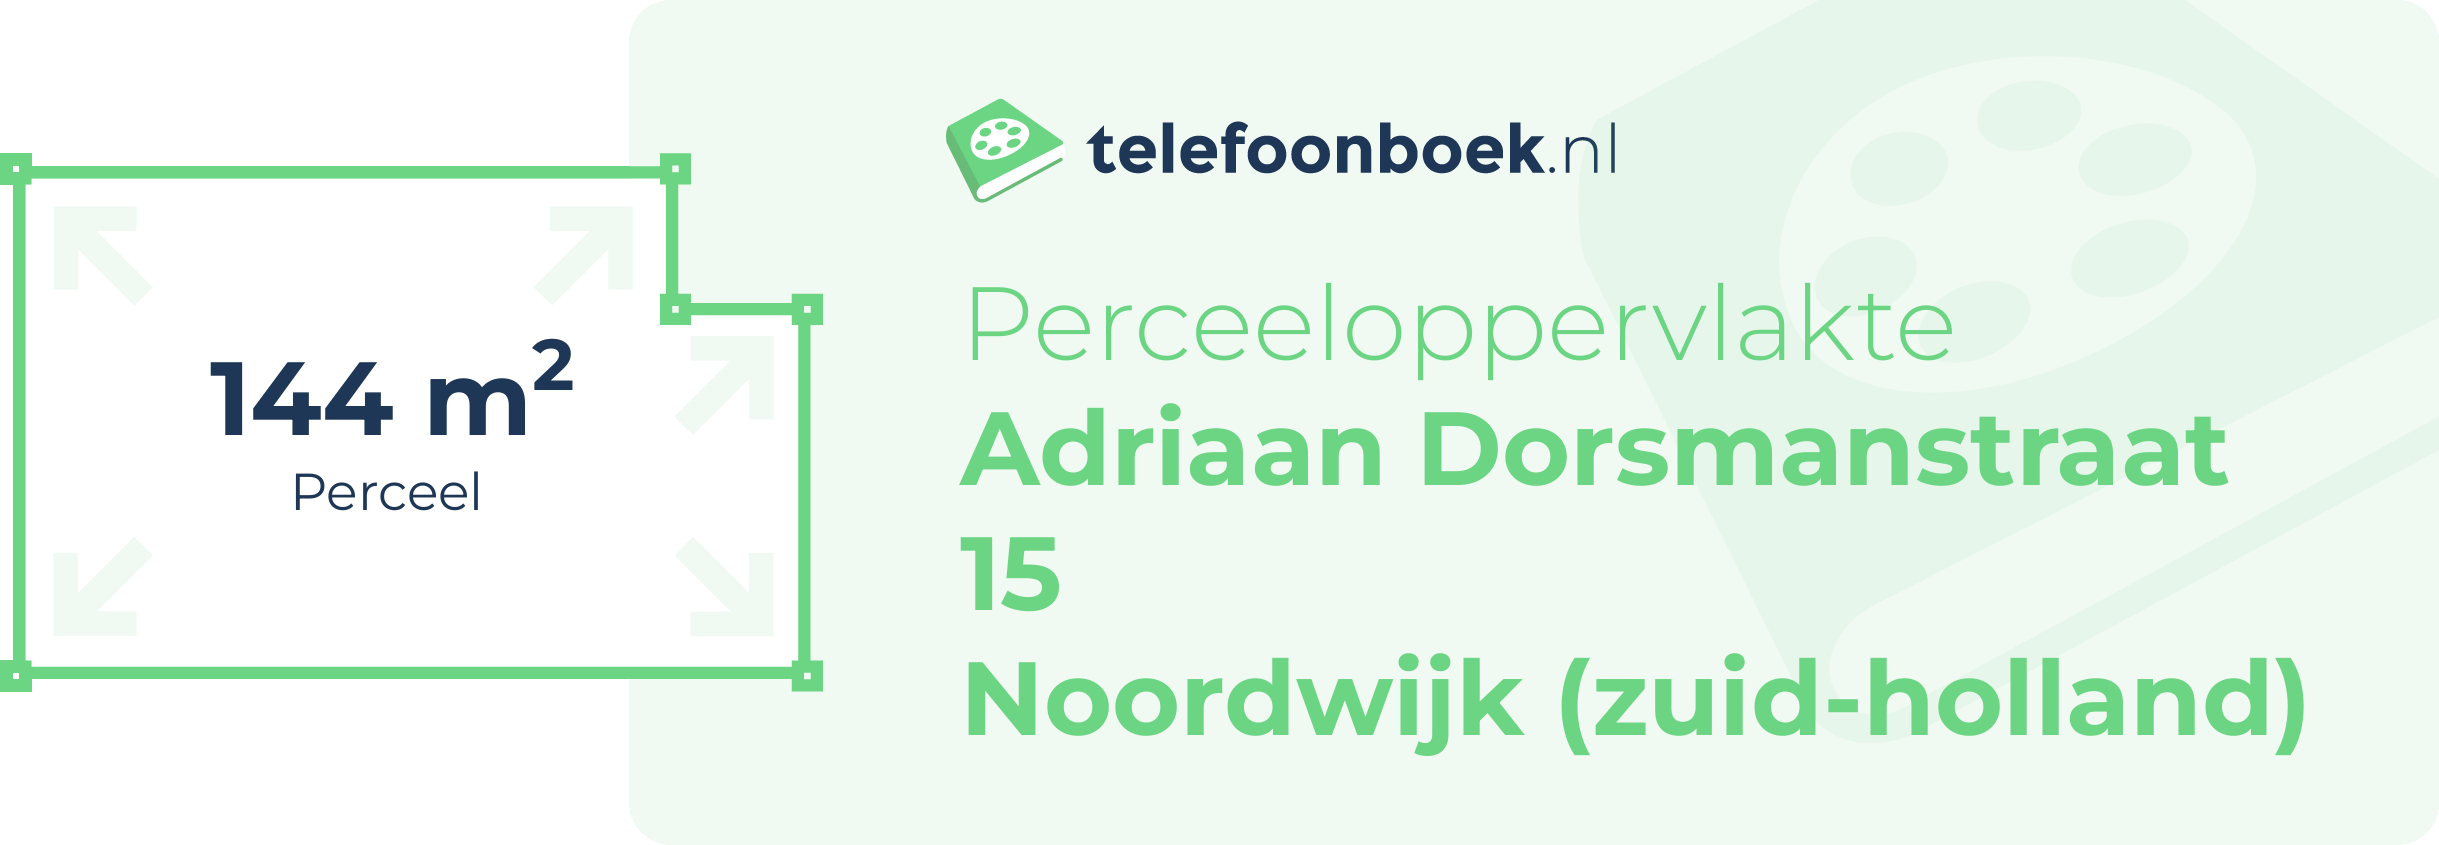 Perceeloppervlakte Adriaan Dorsmanstraat 15 Noordwijk (Zuid-Holland)